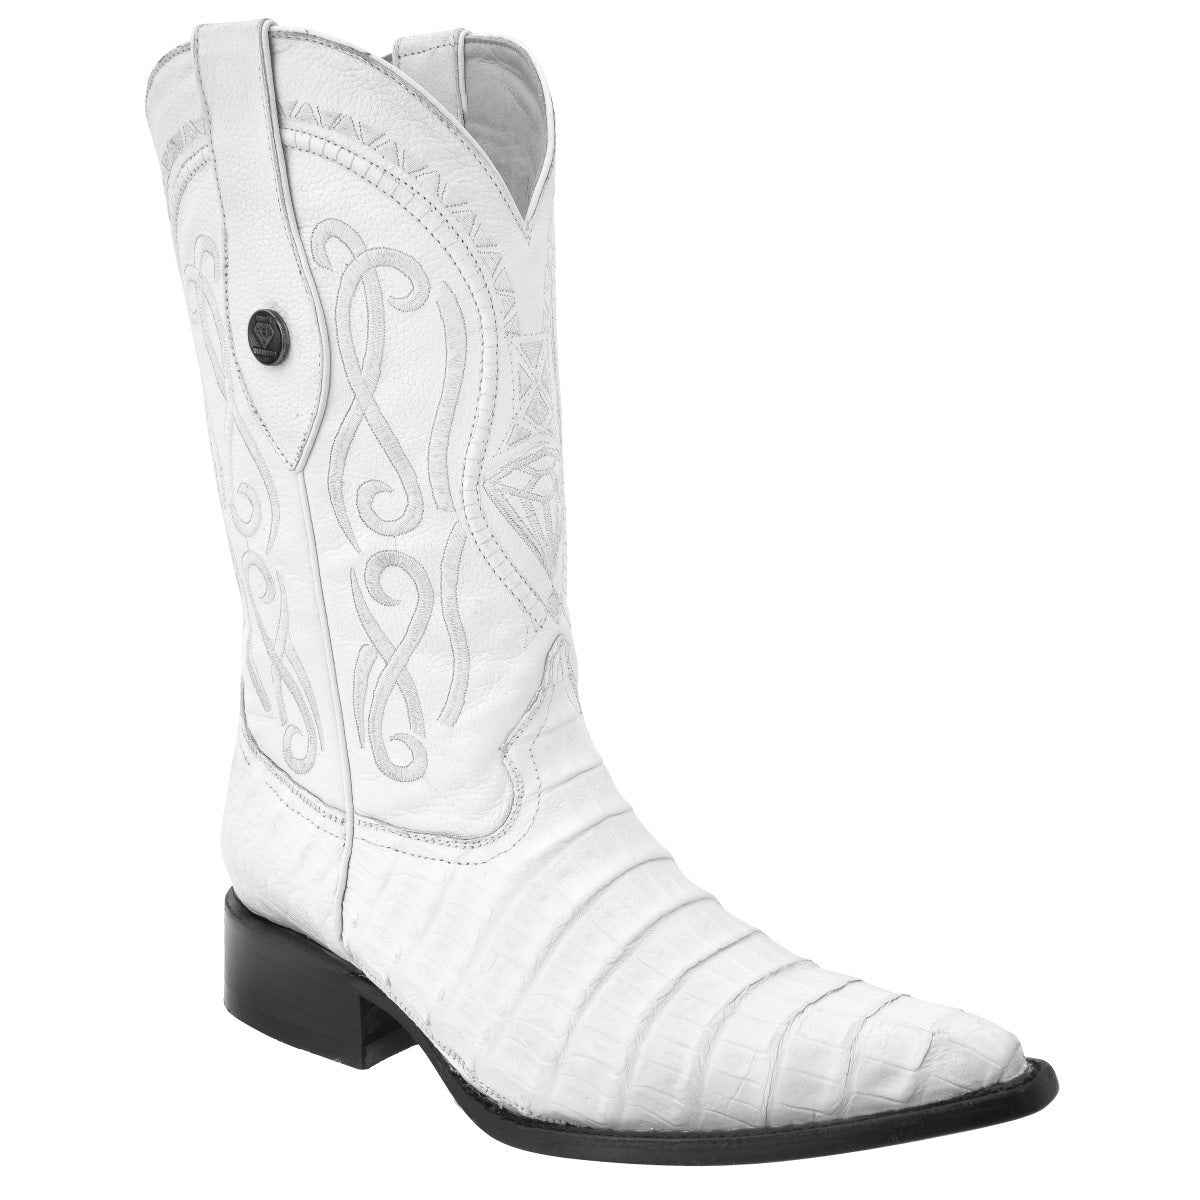 Botas Vaqueras TM-WD0048 - Western Boots